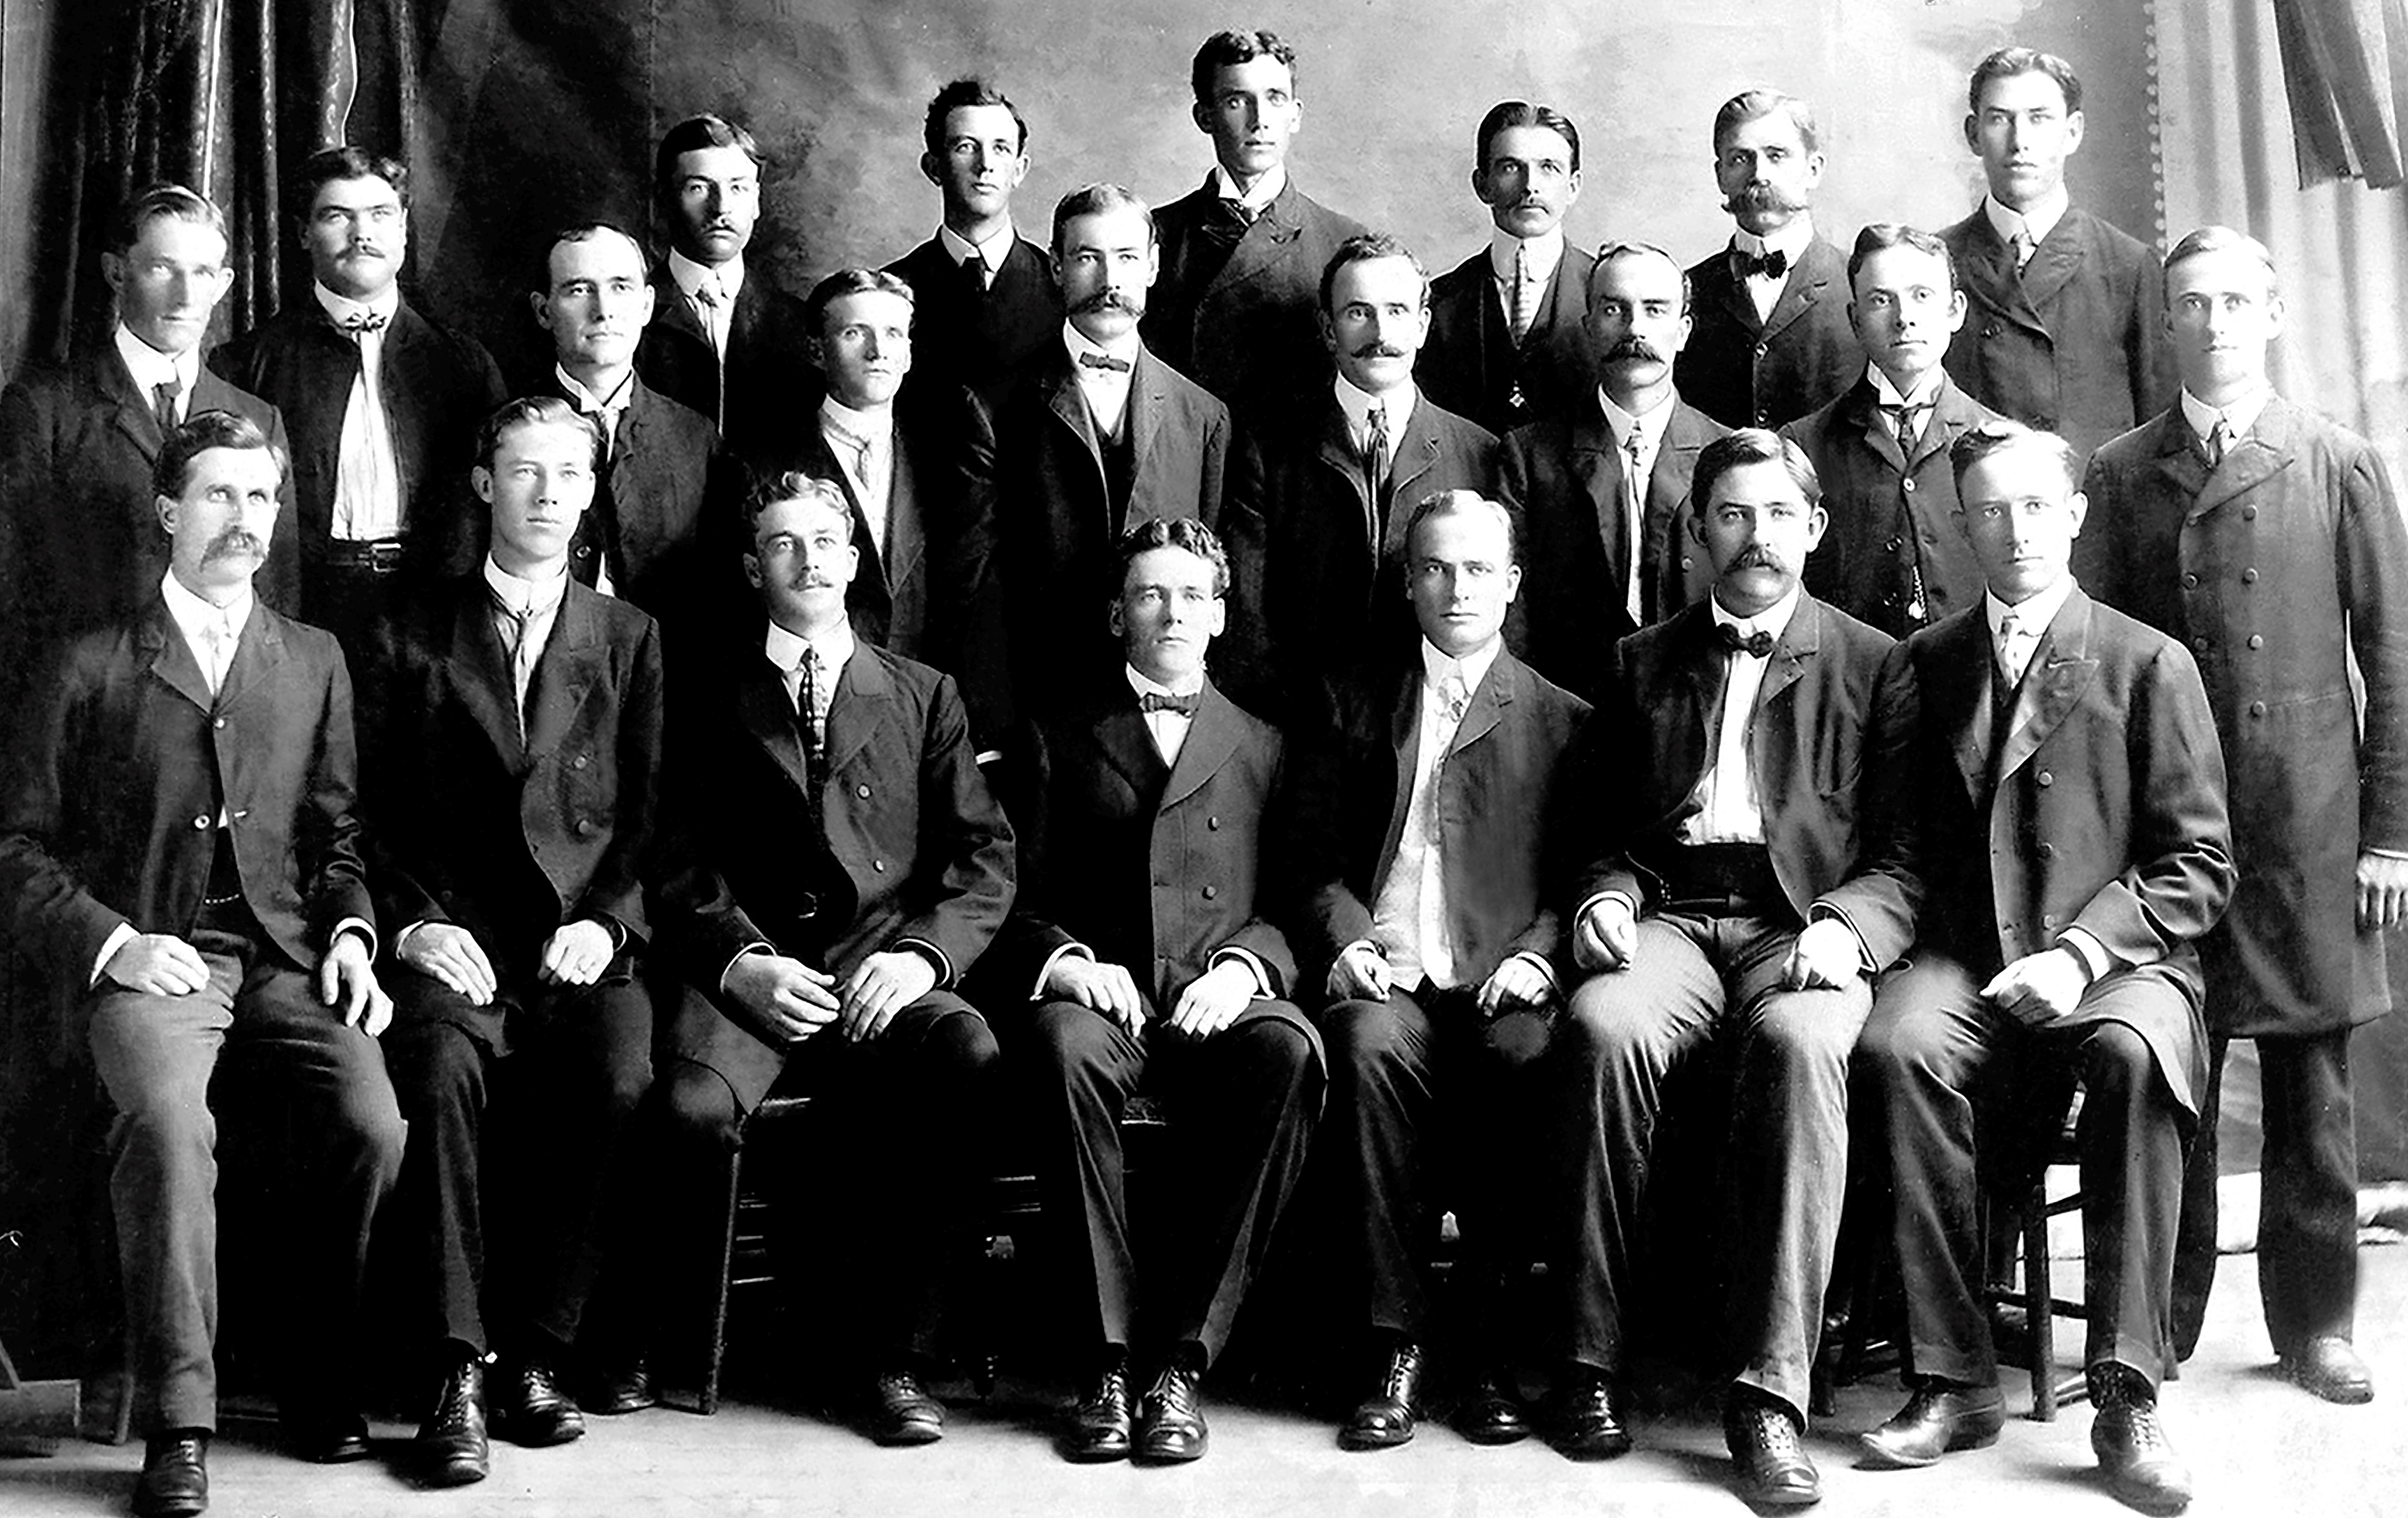 1903/7: South Carolina Conference - Southern States Mission,  1903 July 13